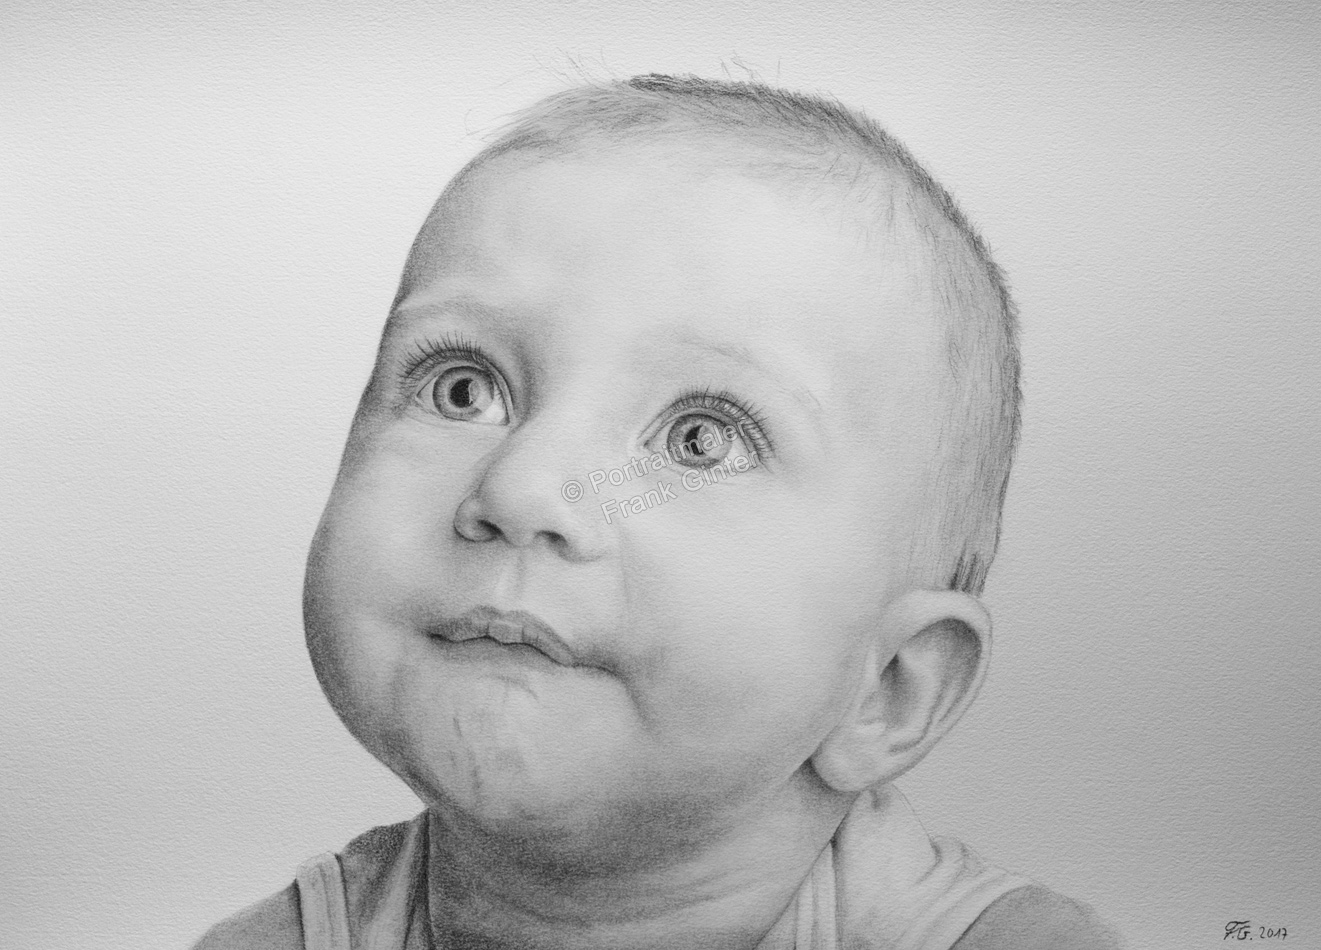 Bleistiftzeichnungen, Portraitzeichnung, Baby Zeichnungen, Bleistiftzeichnung Babys, Portraitzeichner